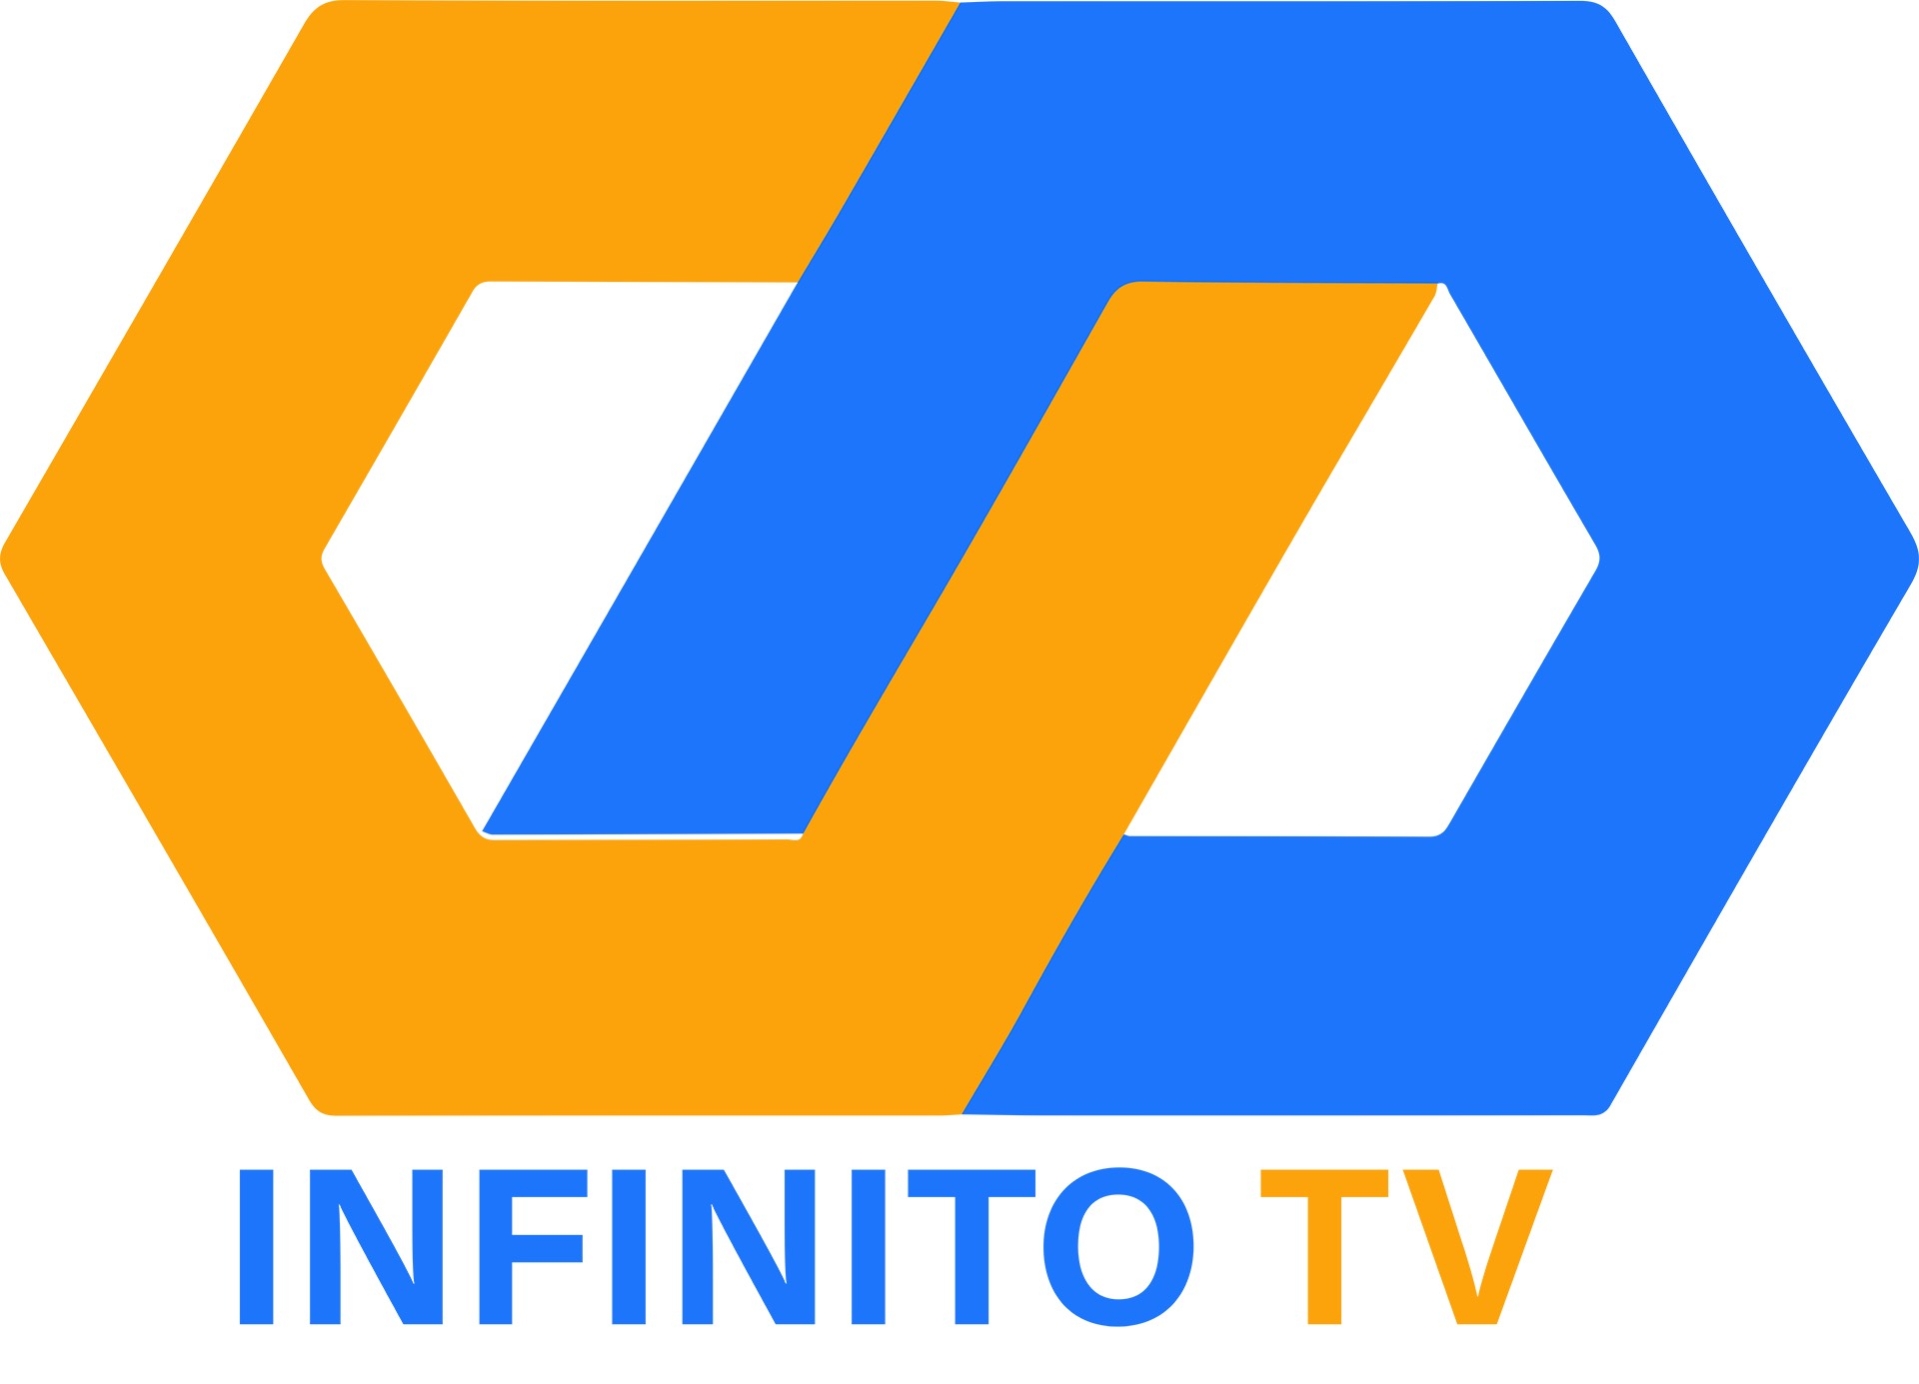 Infinito TV